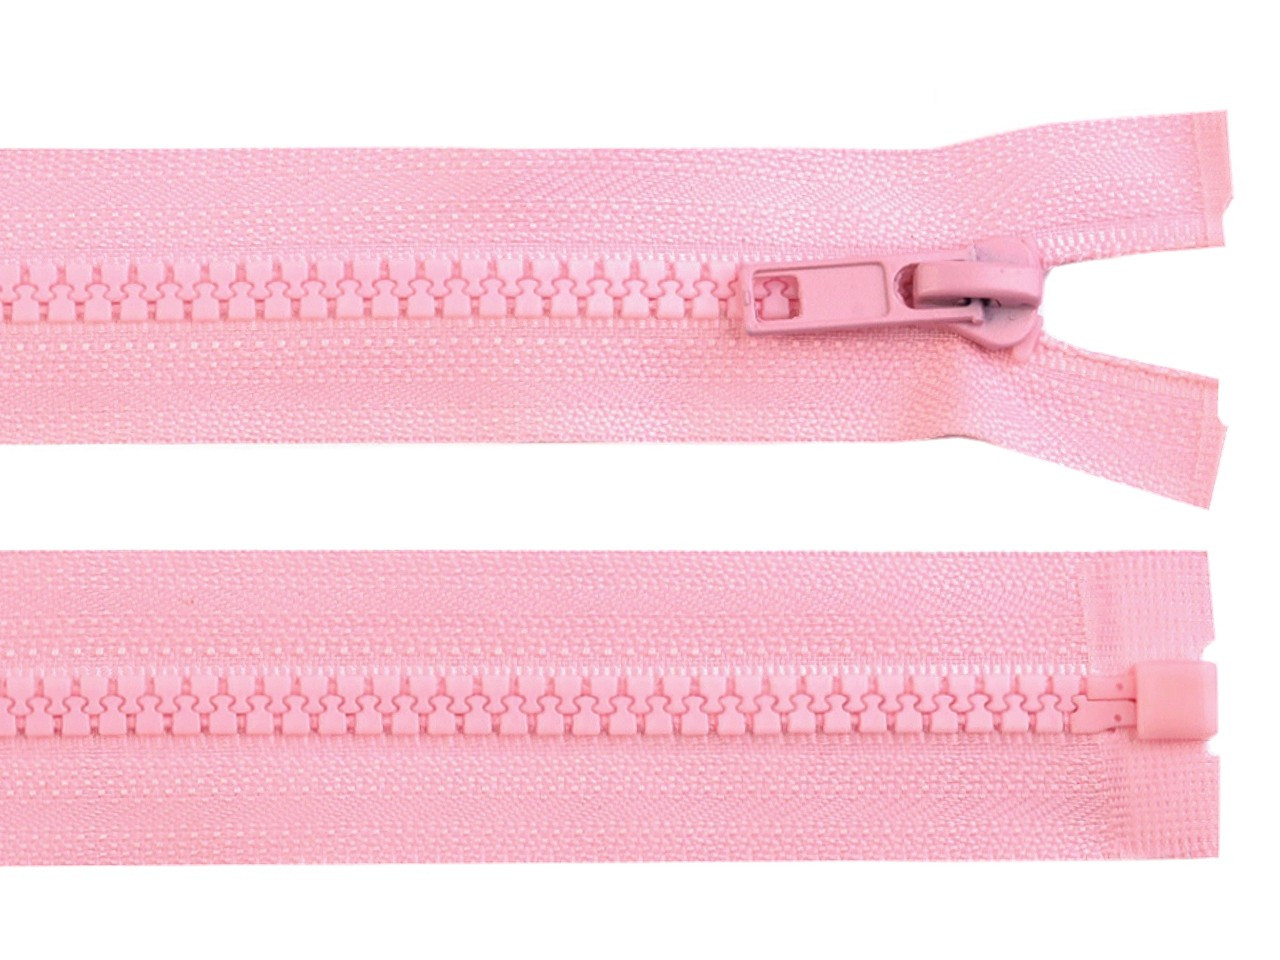 Kostěný zip No 5 délka 40 cm bundový, barva 134 růžová dětská světlá